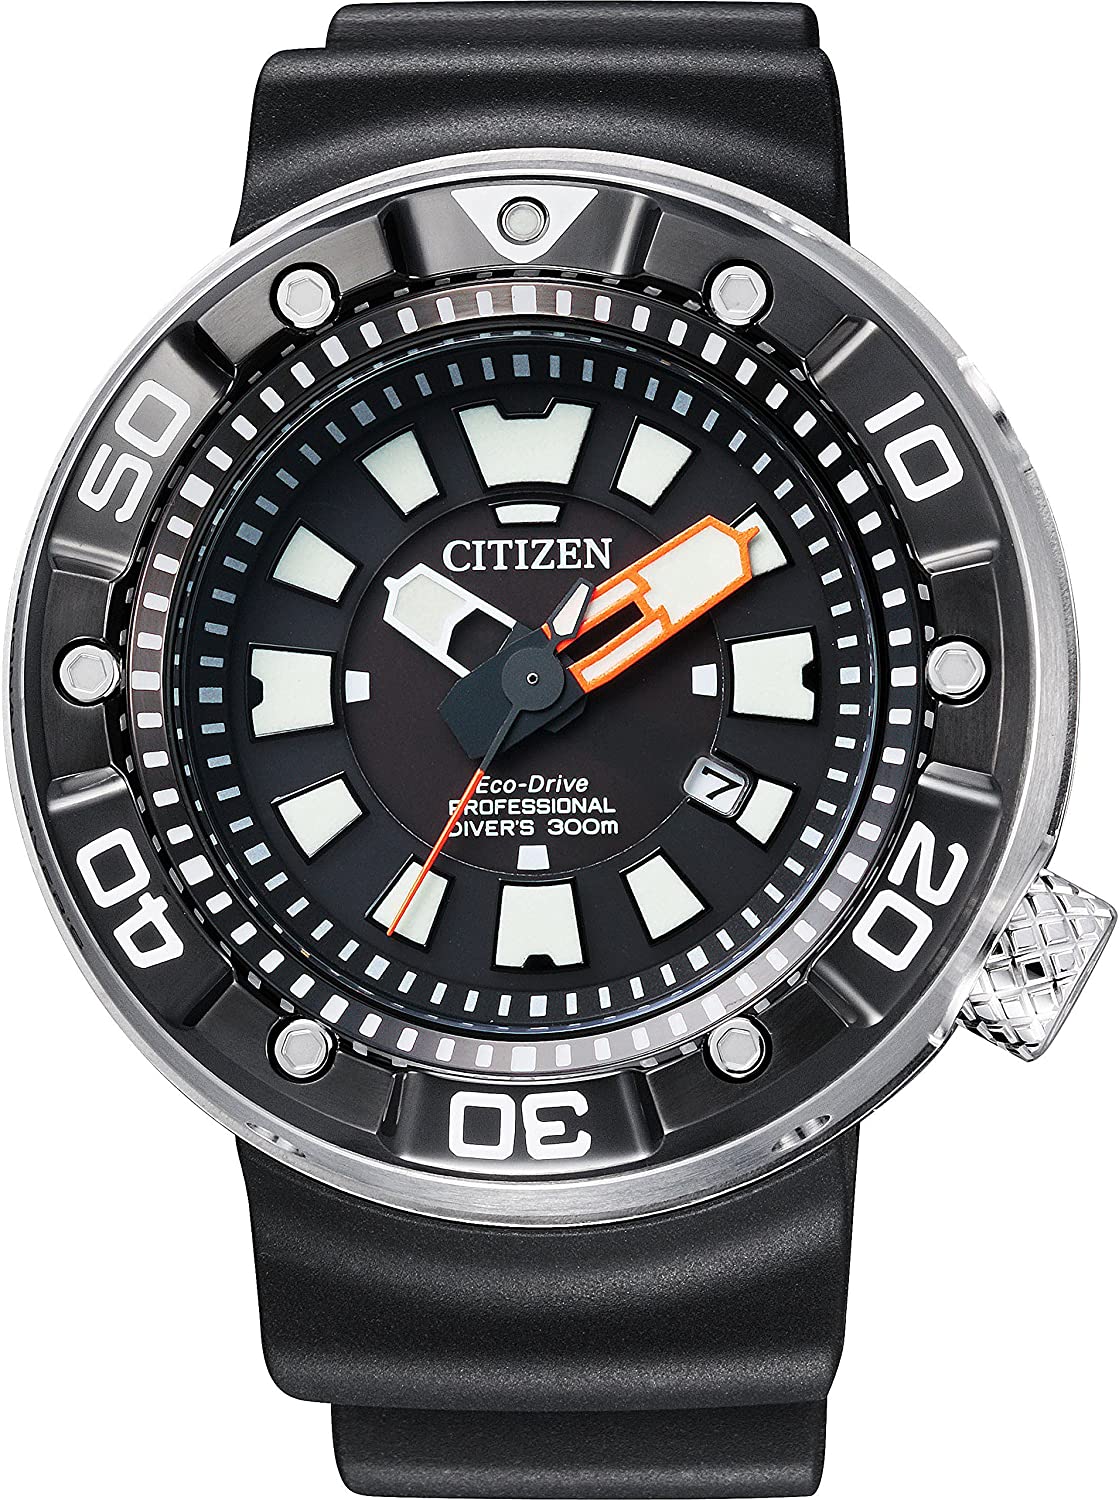 citizen 300m professional dive watch